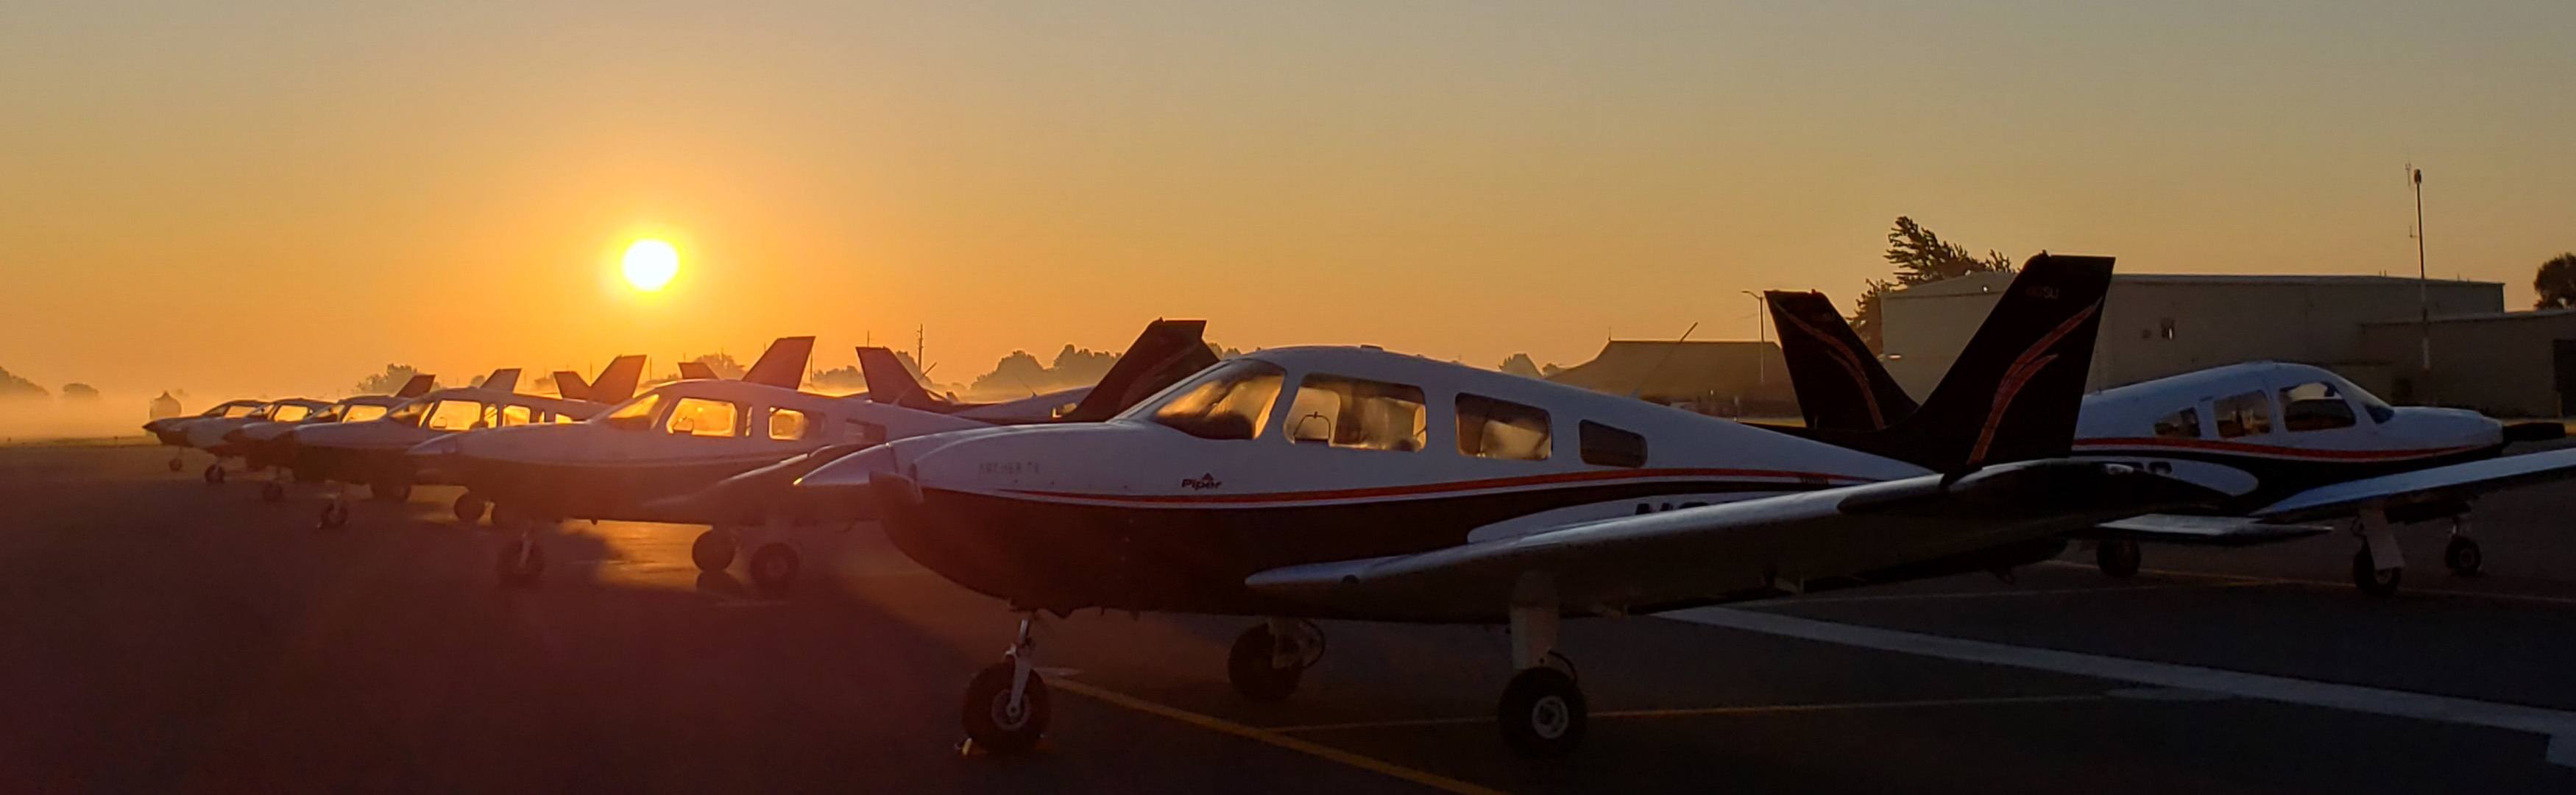 Piper Aircraft at Sunrise